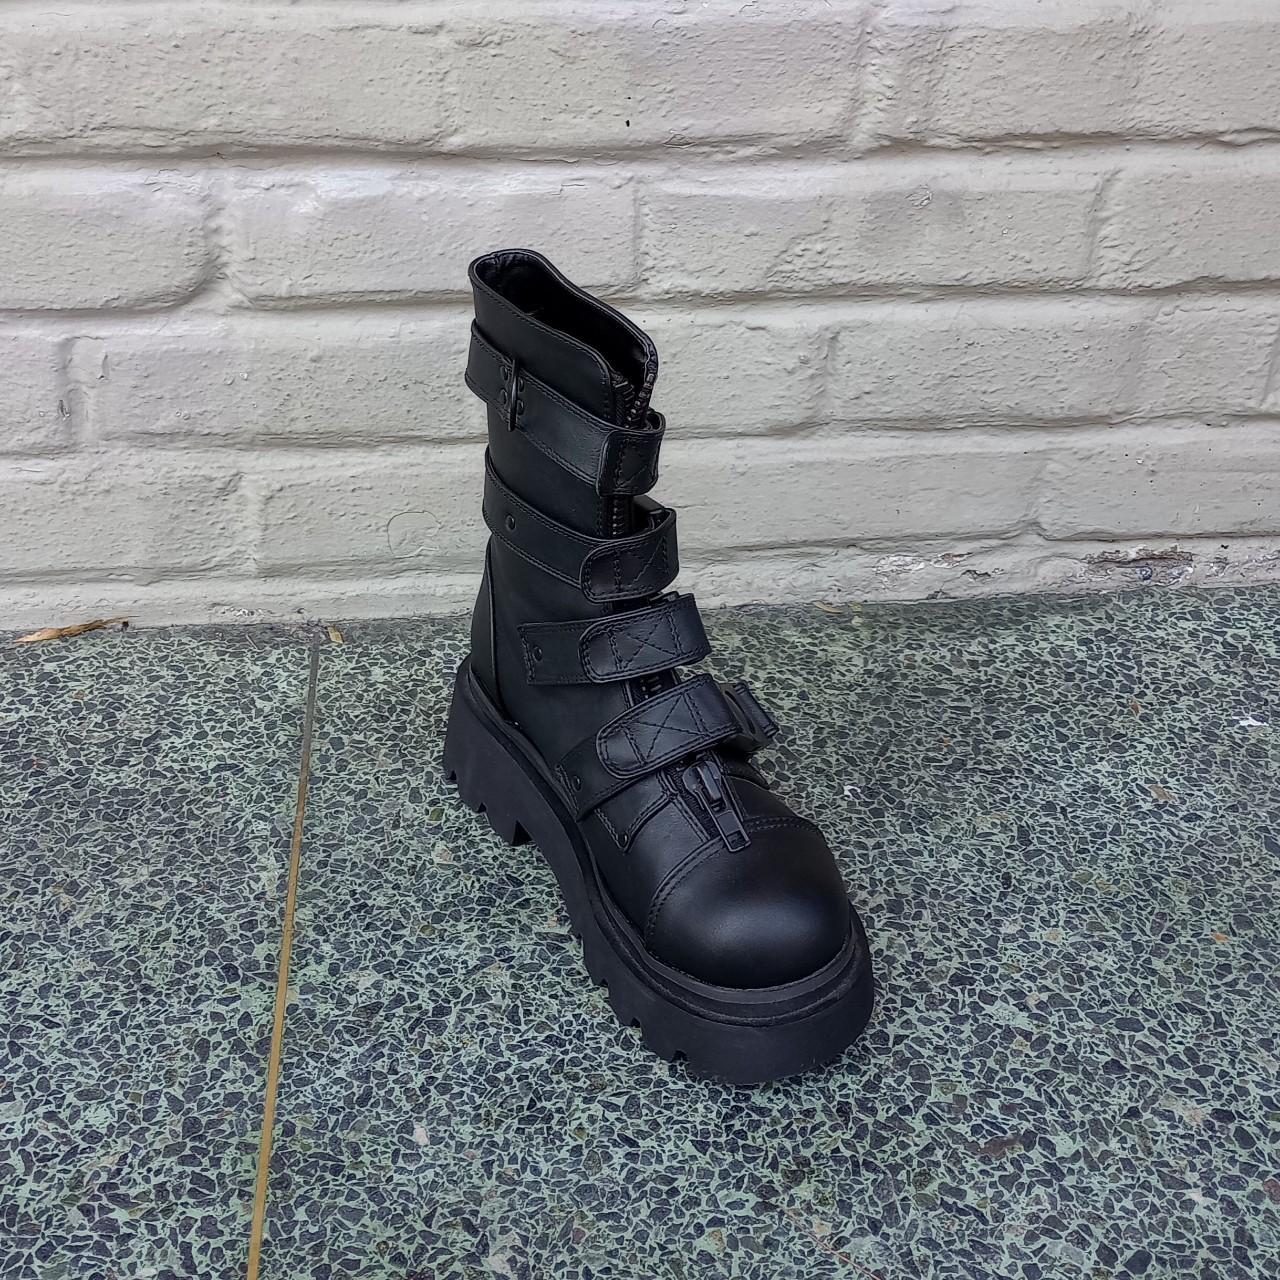 The Demonia Renegade-55 calf-high boot in black has... - Depop